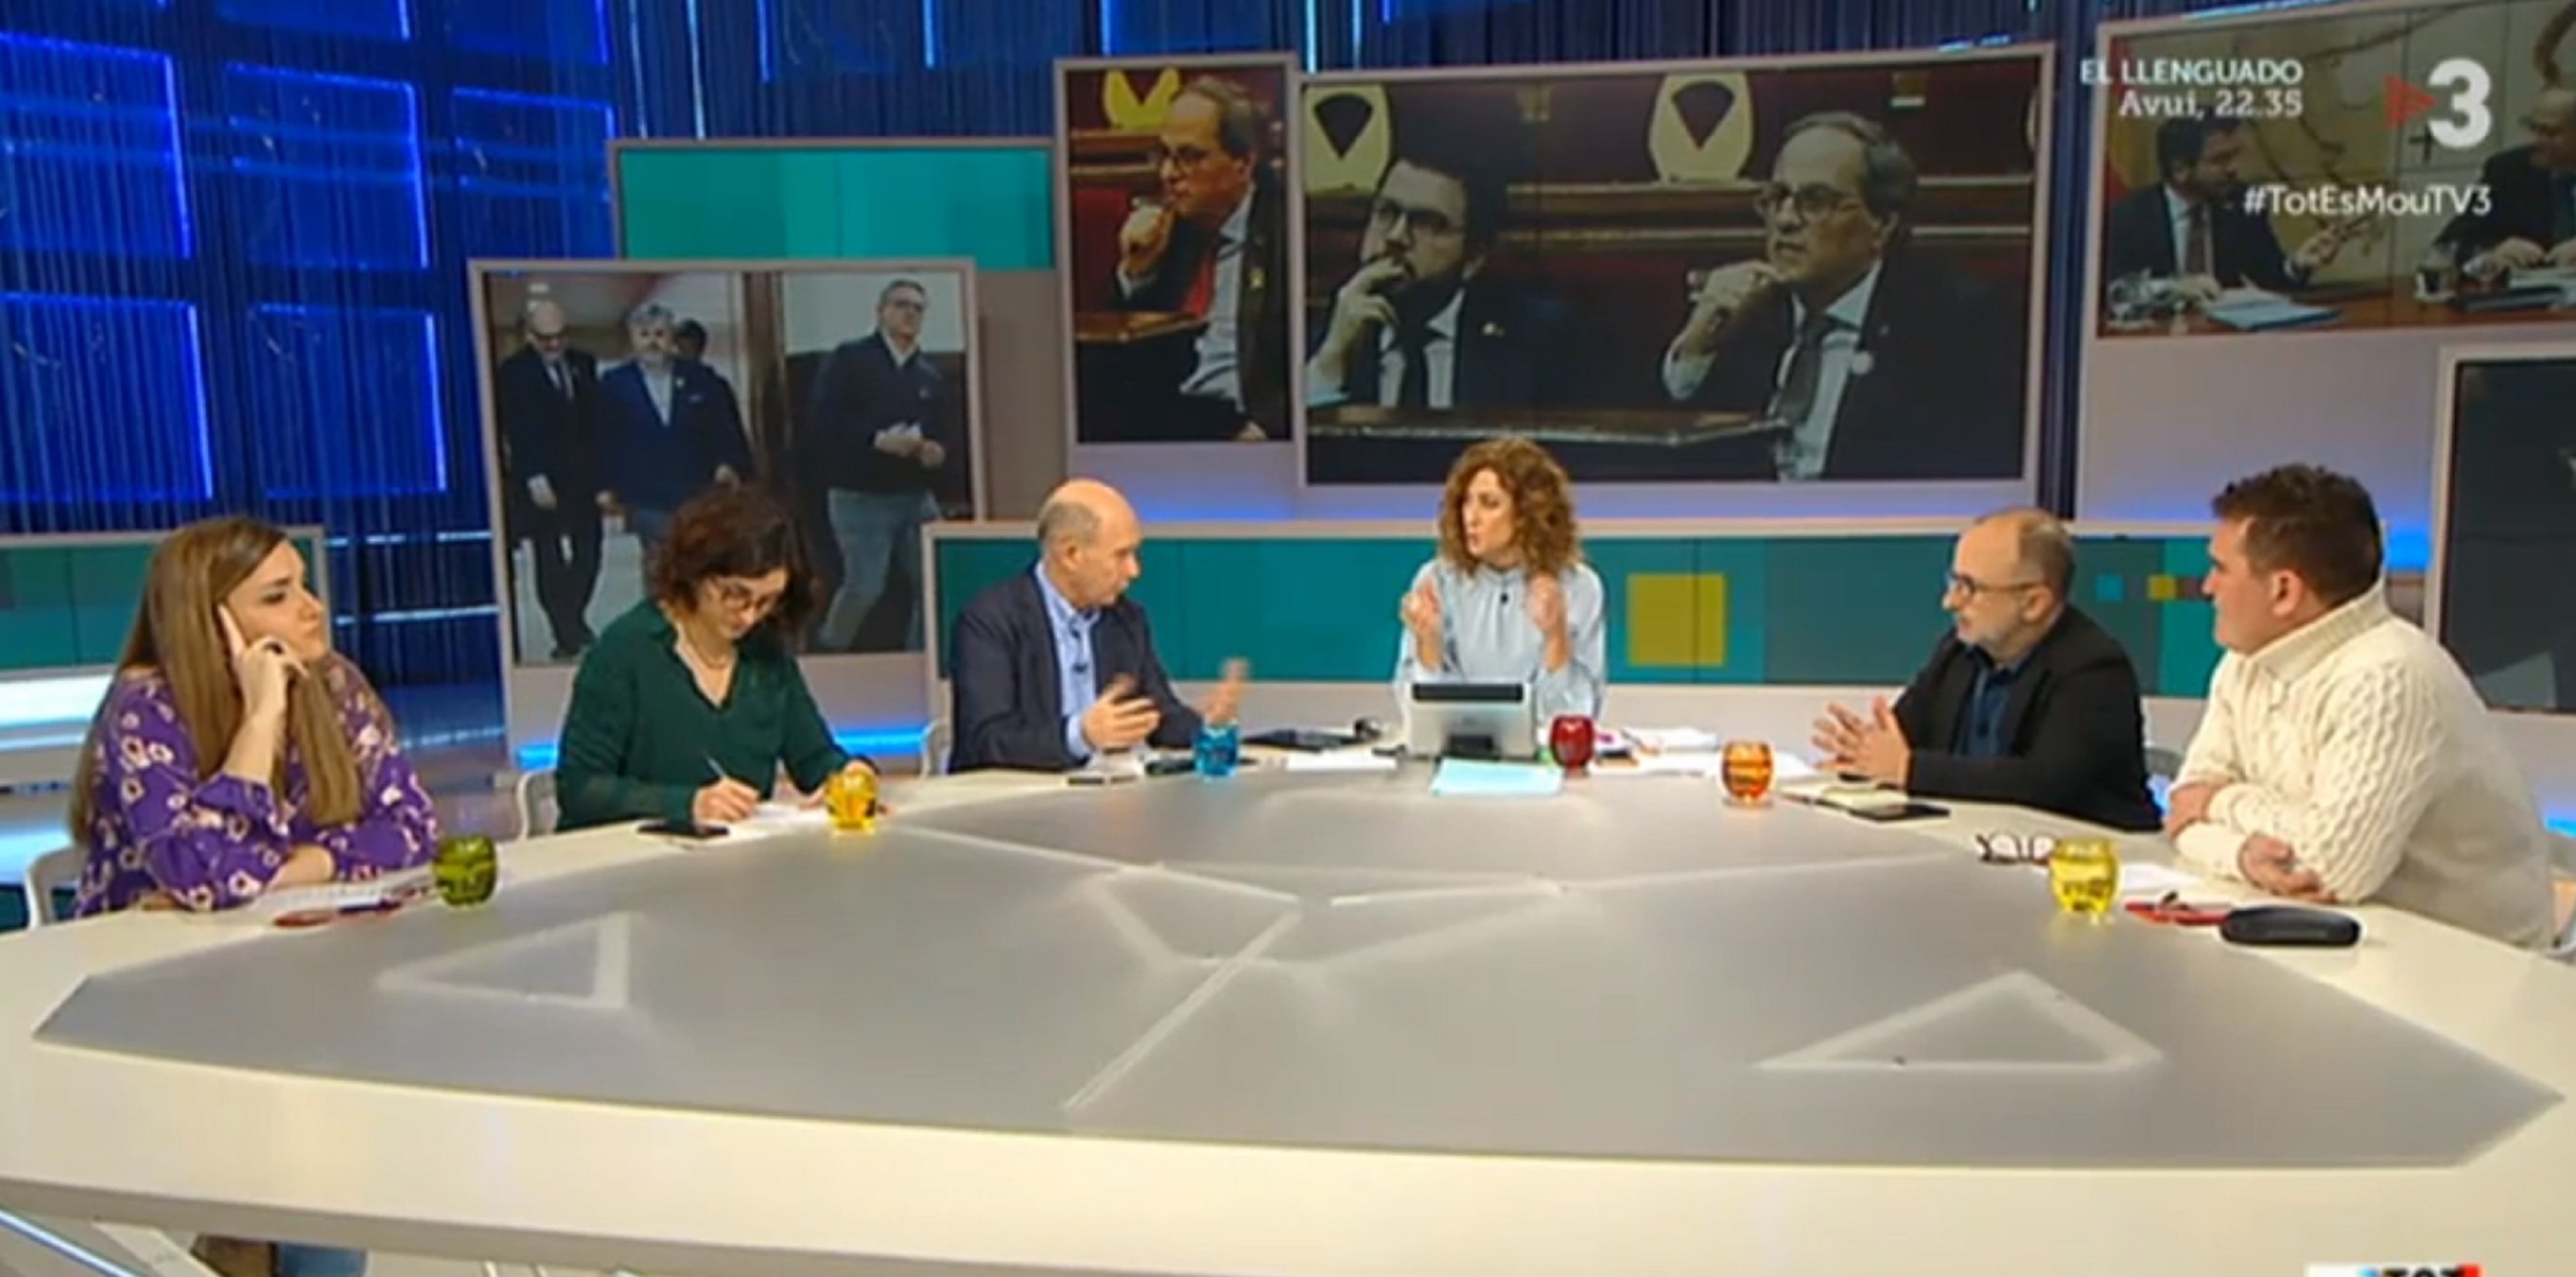 TV3 en precampanya electoral i twitter encès: "Cap tertulià a favor de Torra!"